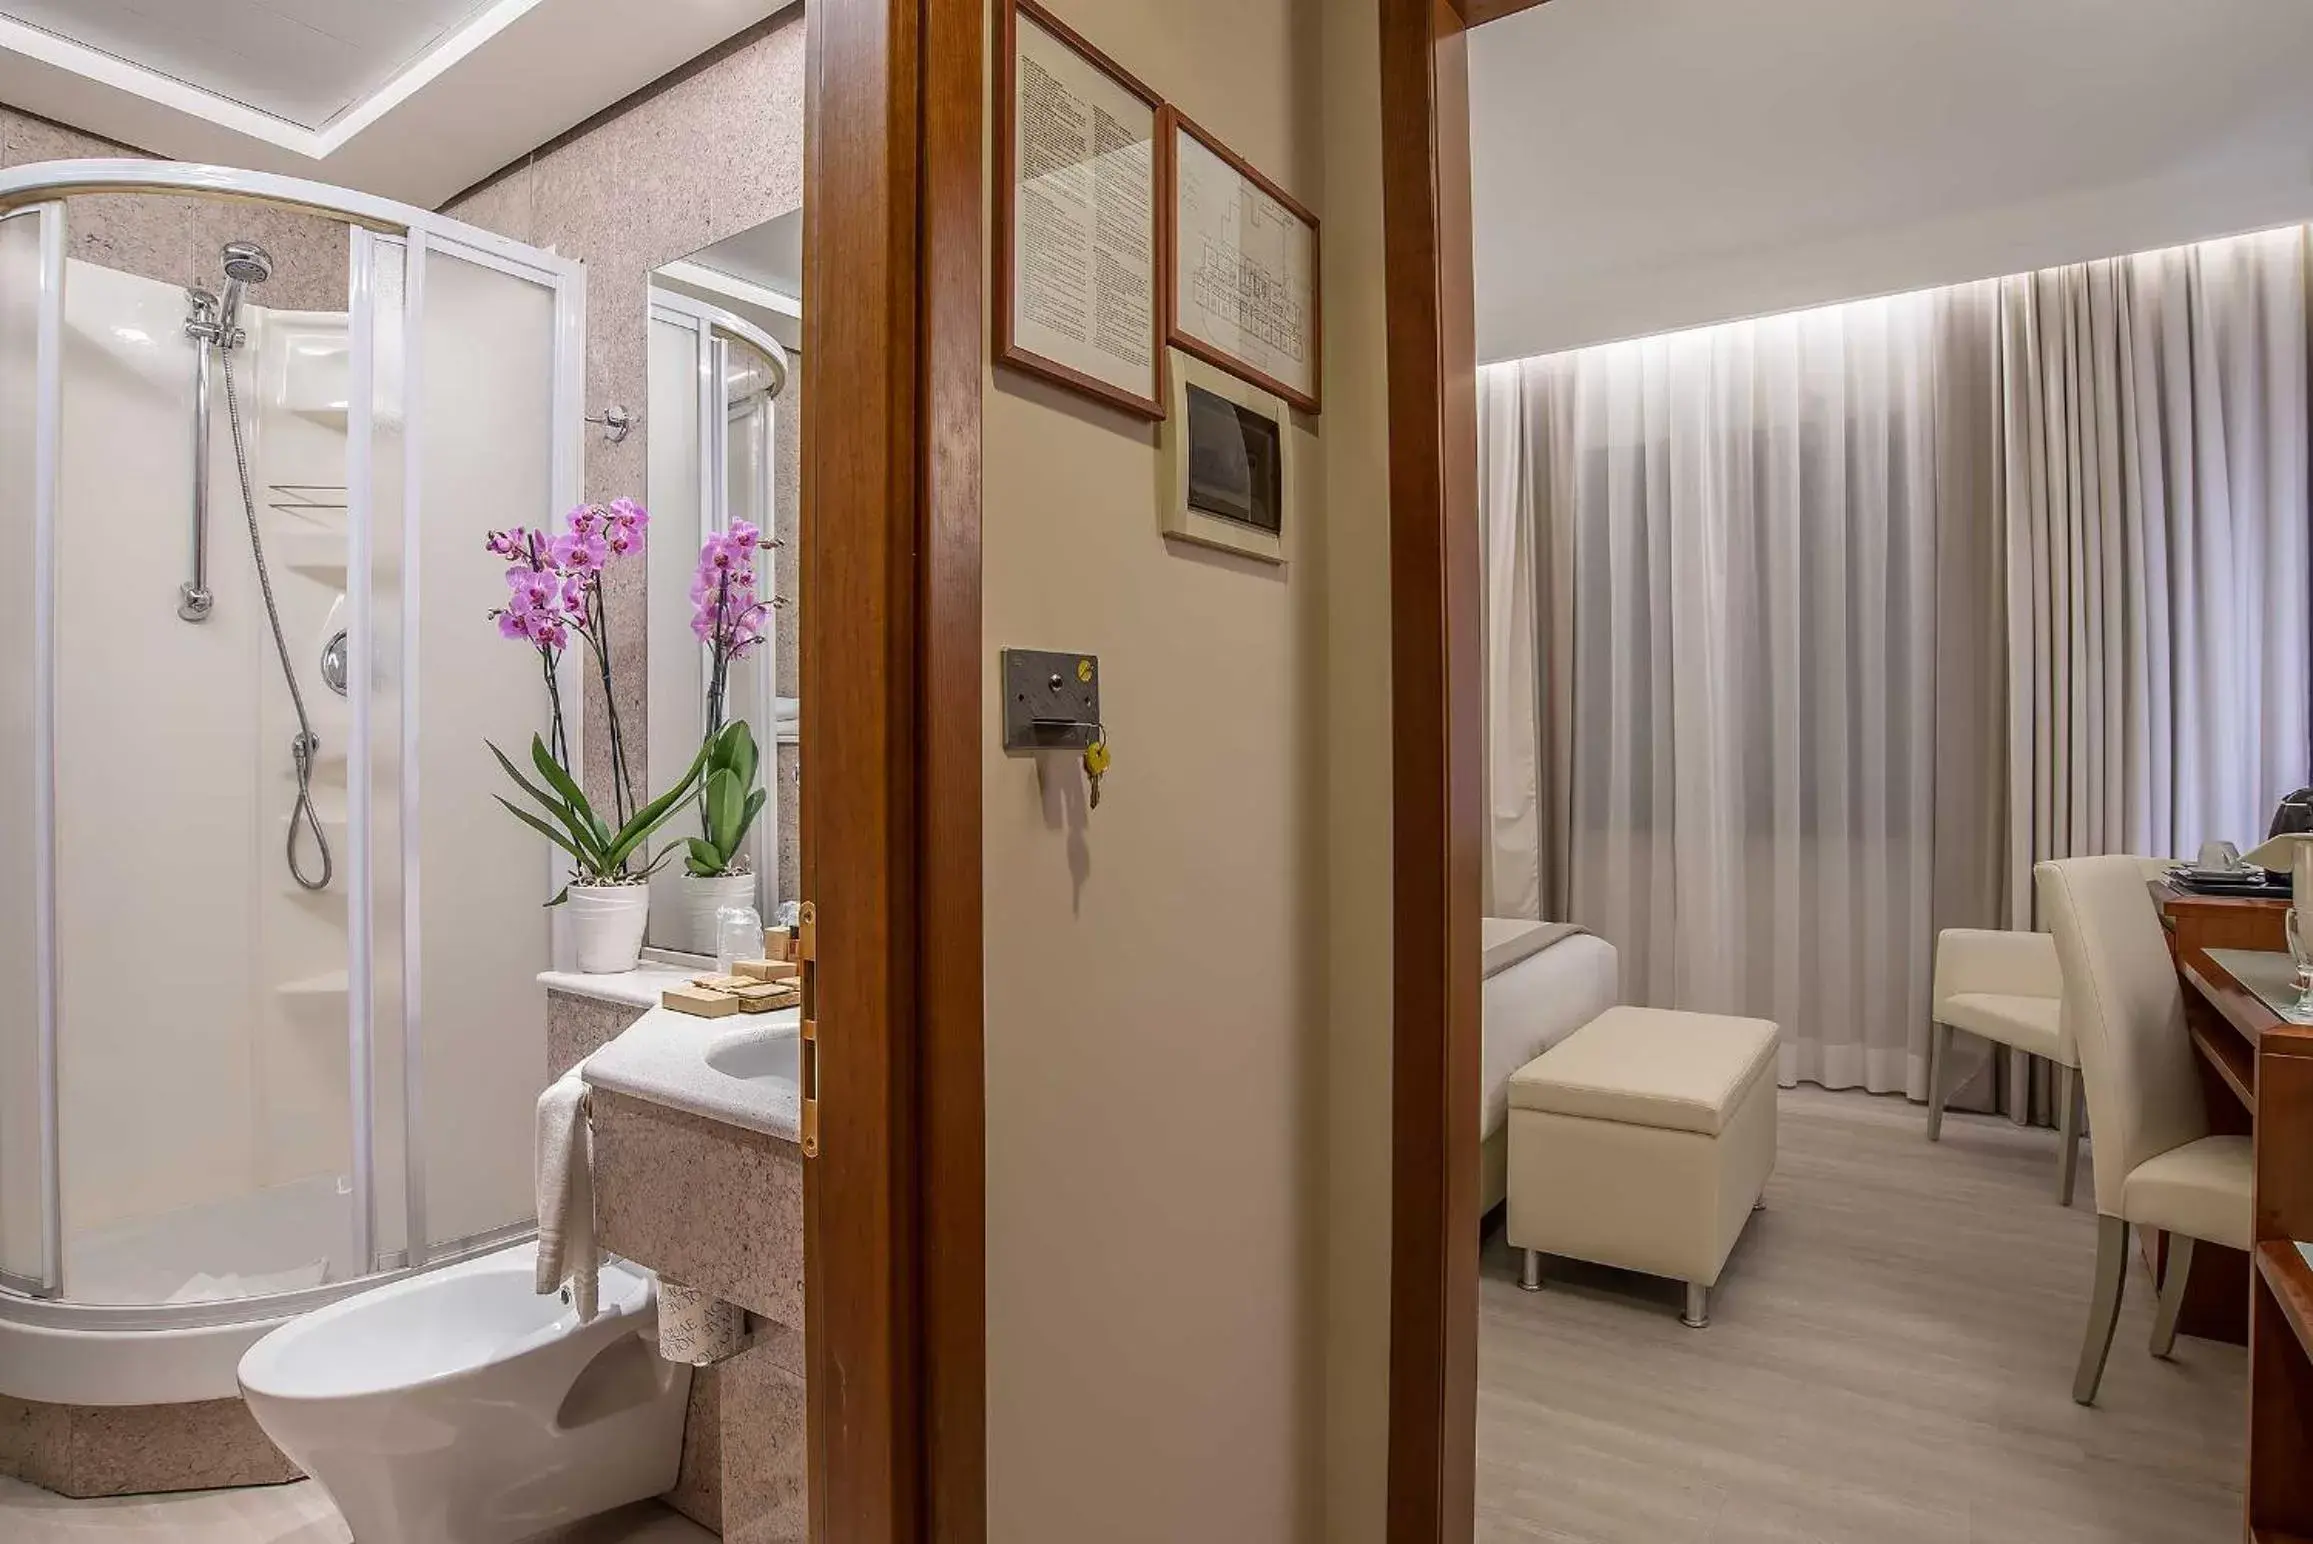 Photo of the whole room, Bathroom in Hotel La Giocca